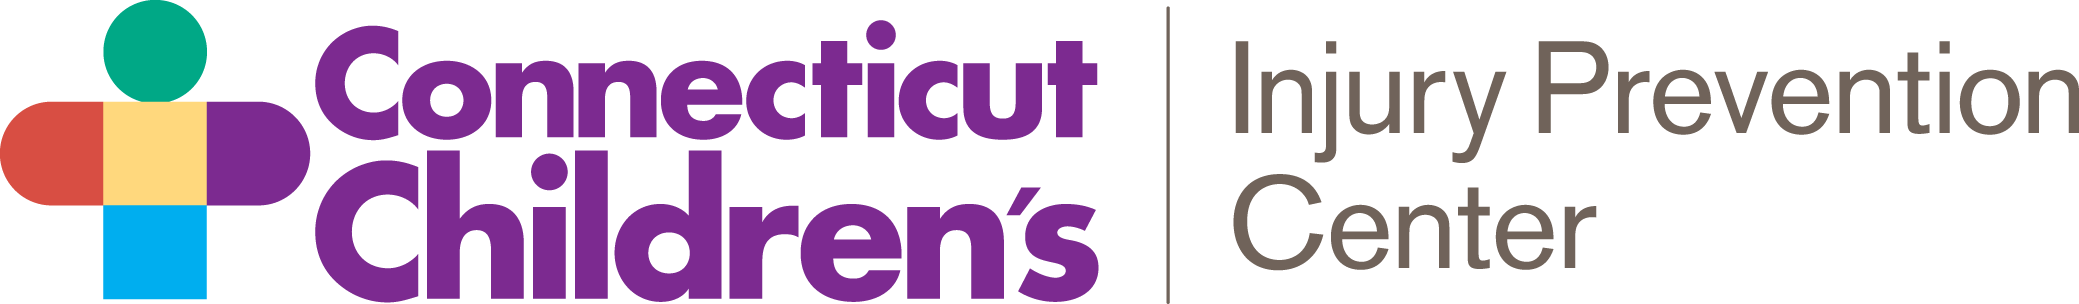 Connecticut Children's Injury Prevention Center Logo